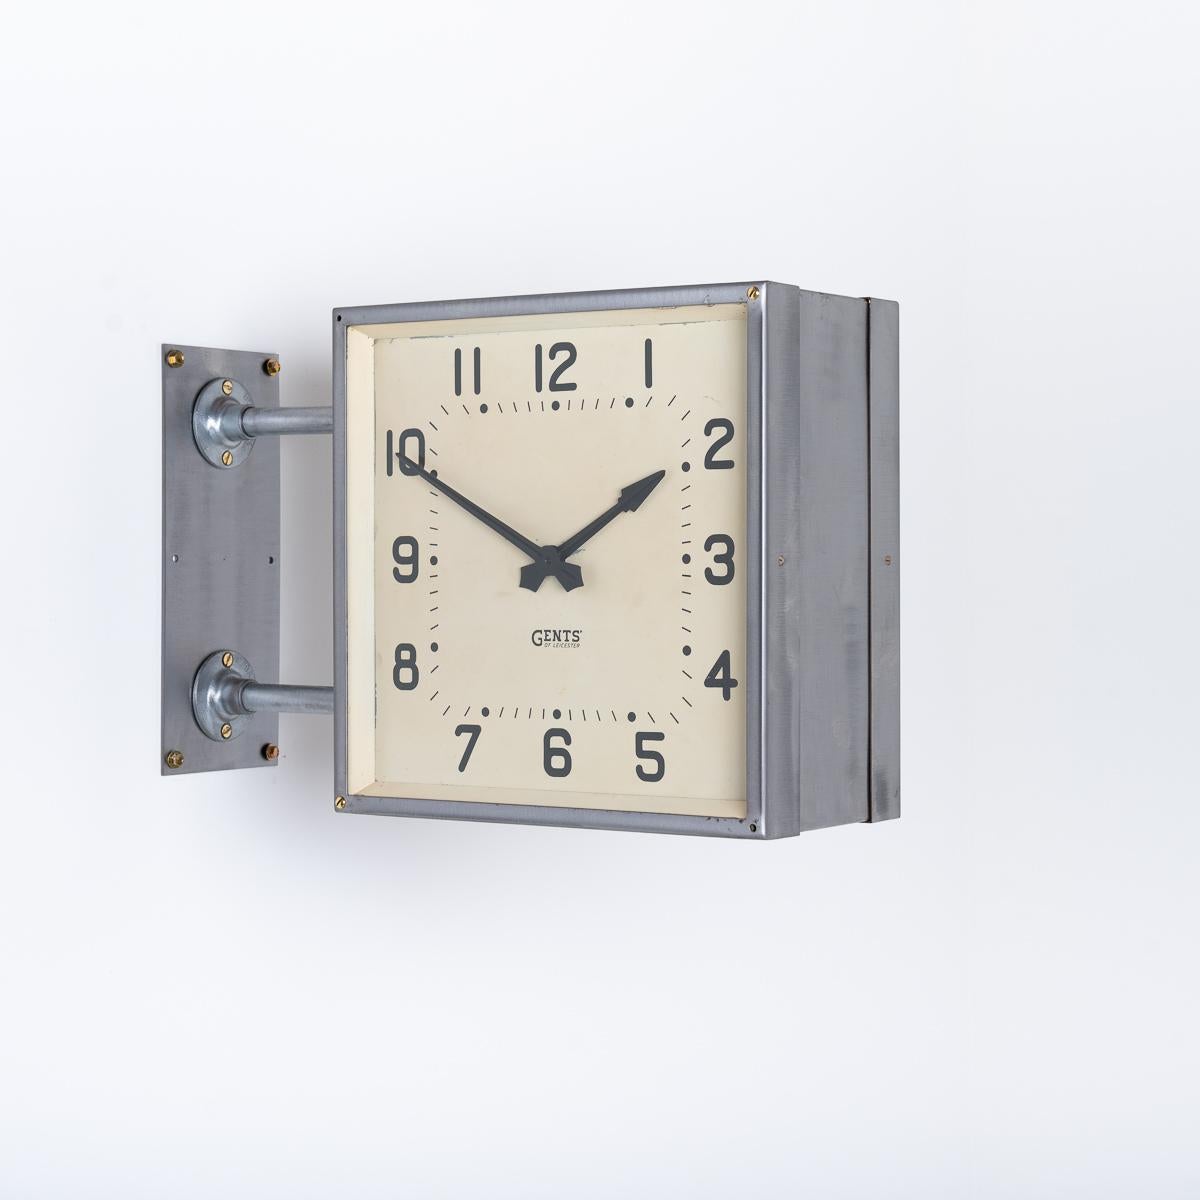 ZWEISEITIGE QUADRATISCHE WANDUHR VON GENTS OF LEICESTER

Eine seltene Form A und Größe Uhr von britischen Uhrmacher Gents of Leicester.

Hergestellt um 1940

Das Stahlgehäuse der Uhr wurde freigelegt und in einem RAW-gebürsteten Zustand belassen und